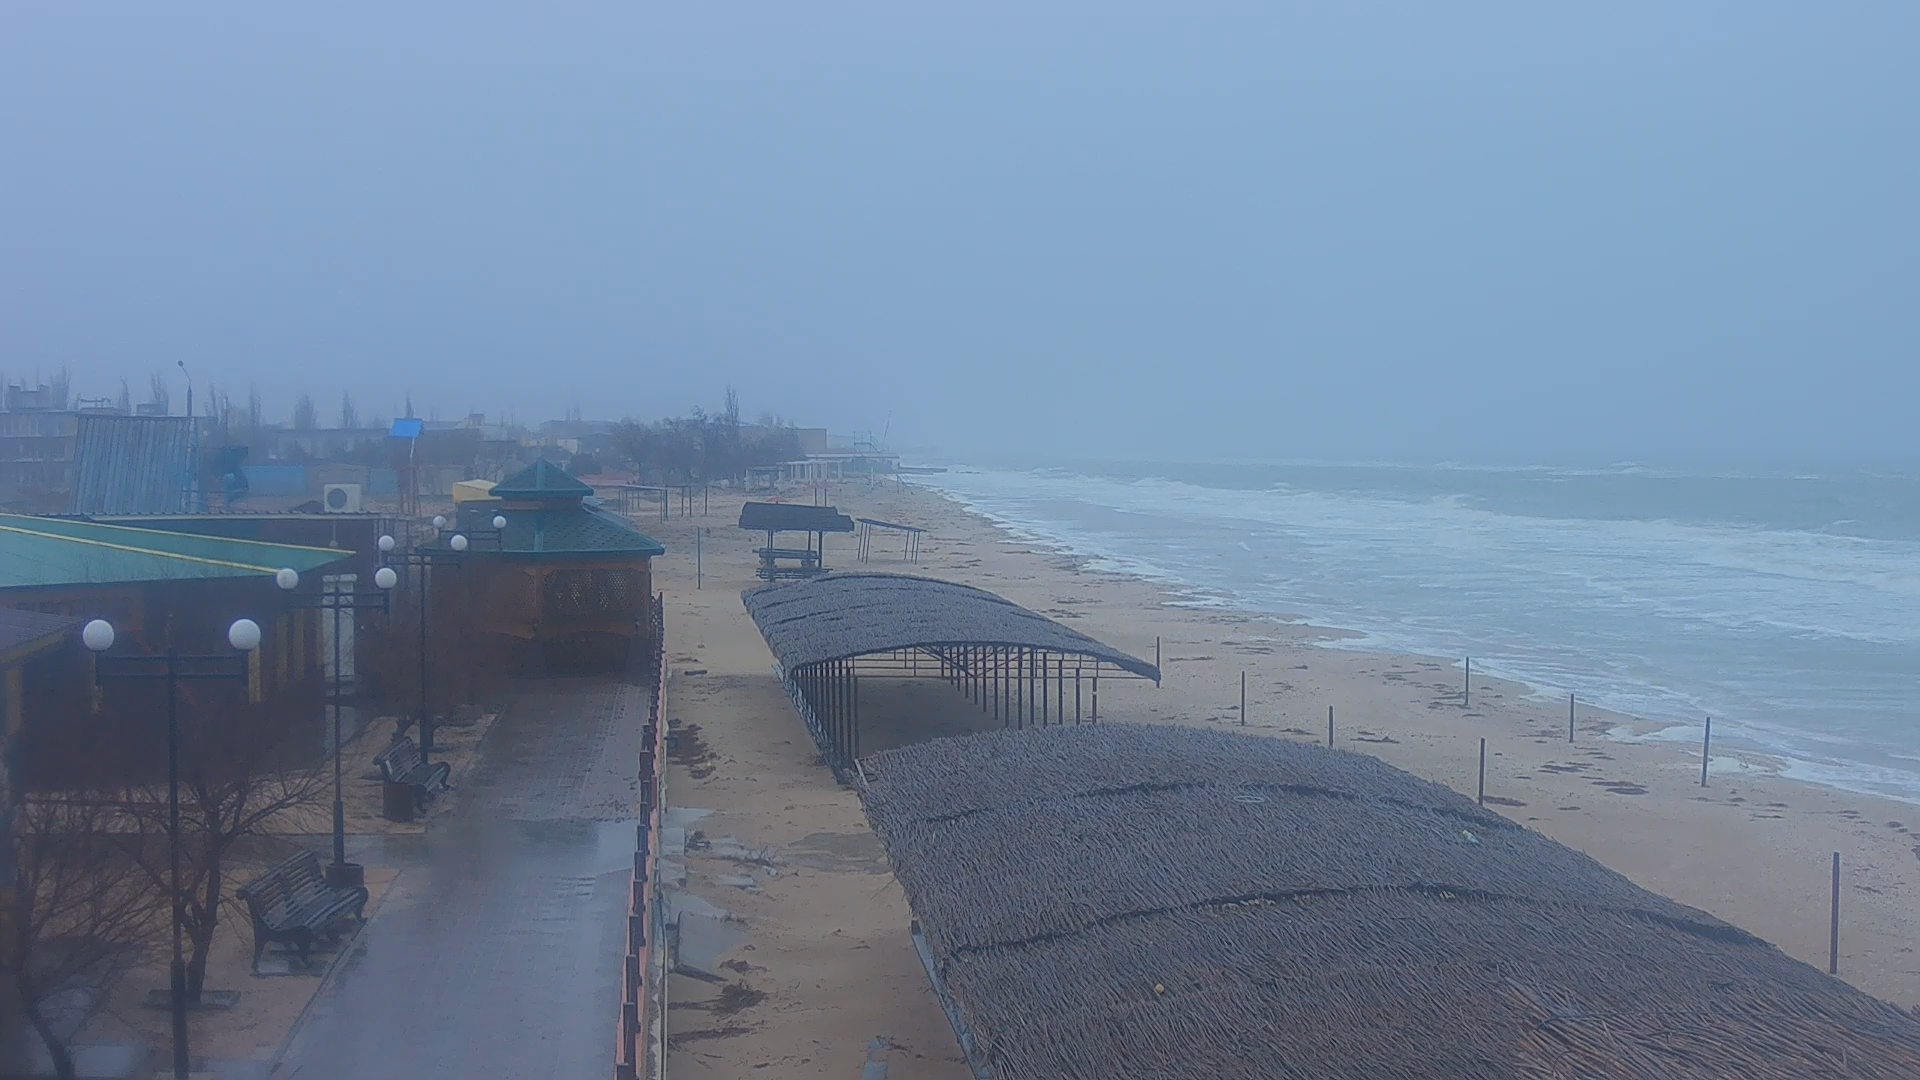 Шквал и большие волны: обещанный шторм накрыл Азовское море (ФОТО)